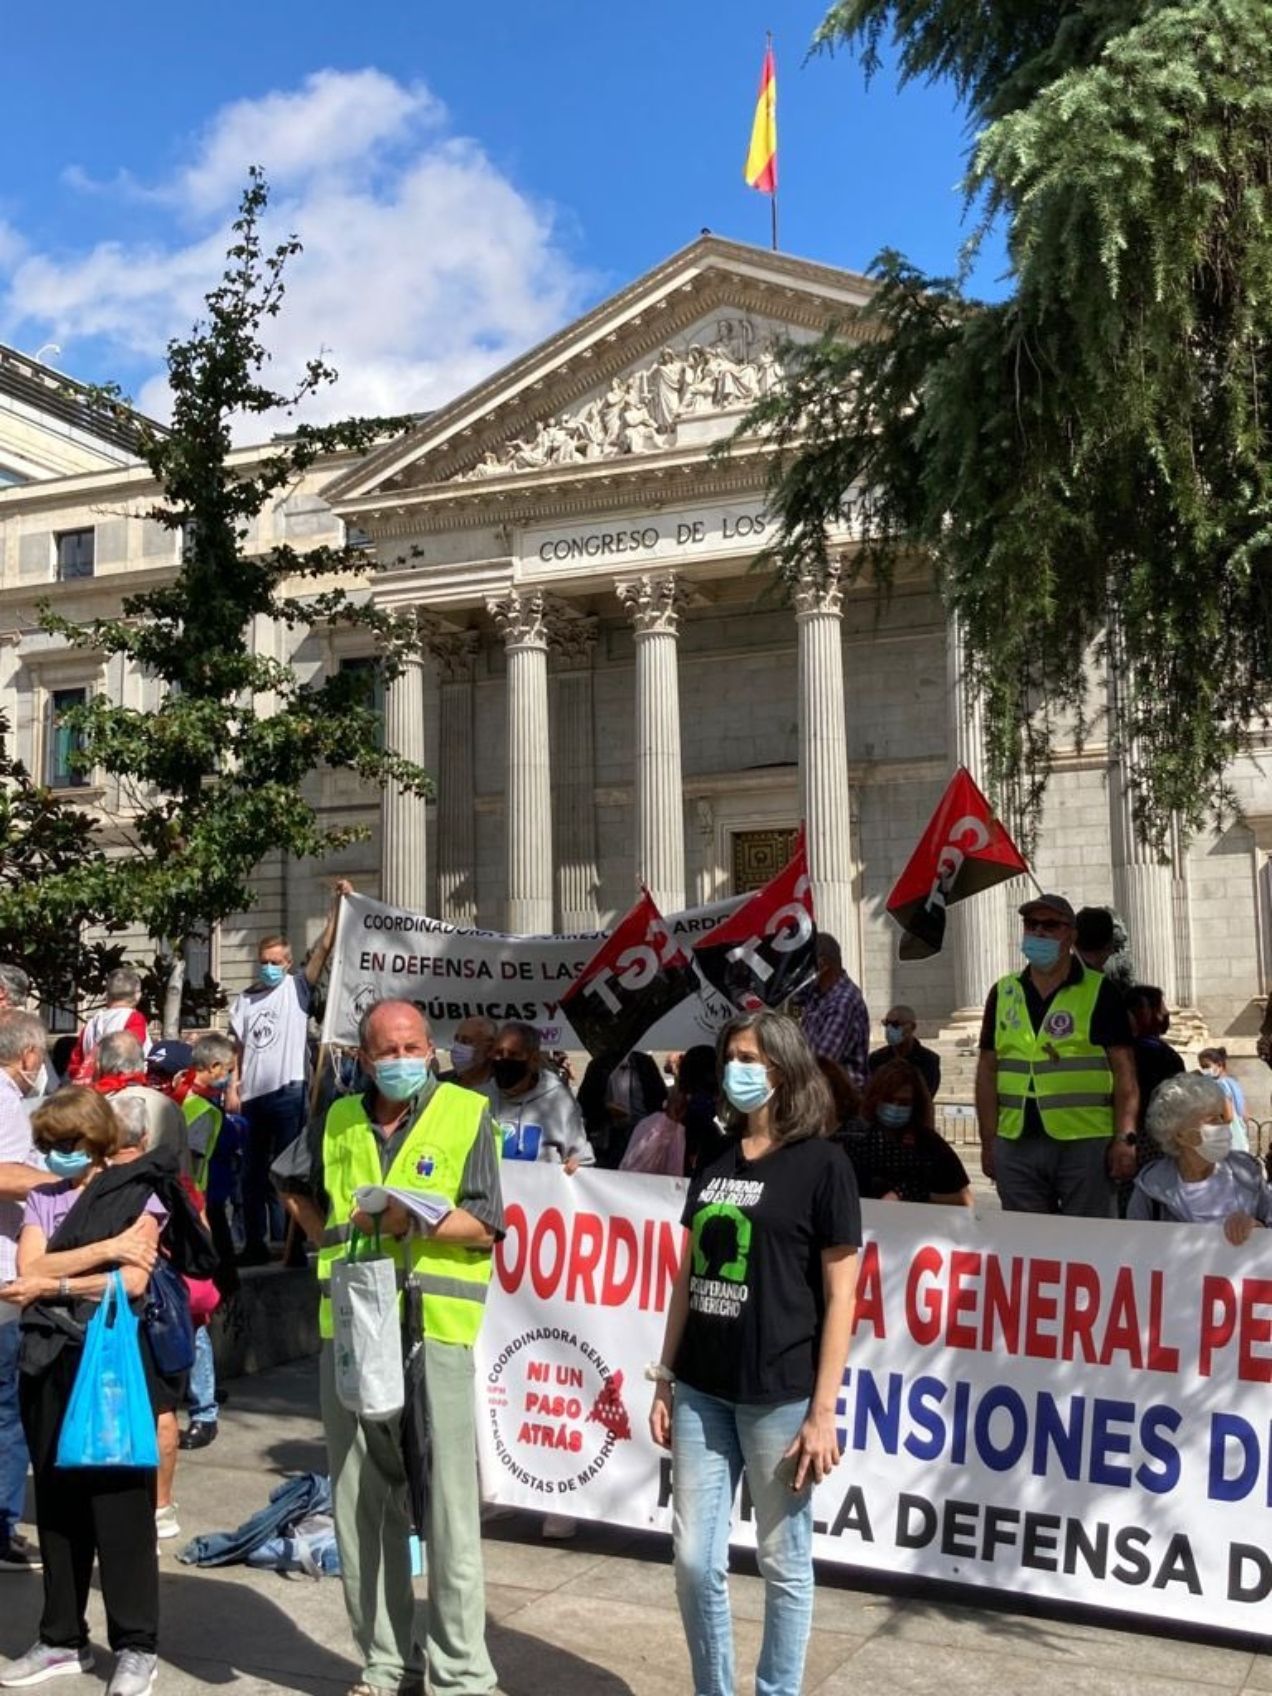 Los pensionistas marchan en Madrid contra Escrivá y por una auditoría de la Seguridad Social (Twitter Otoño Caliente)